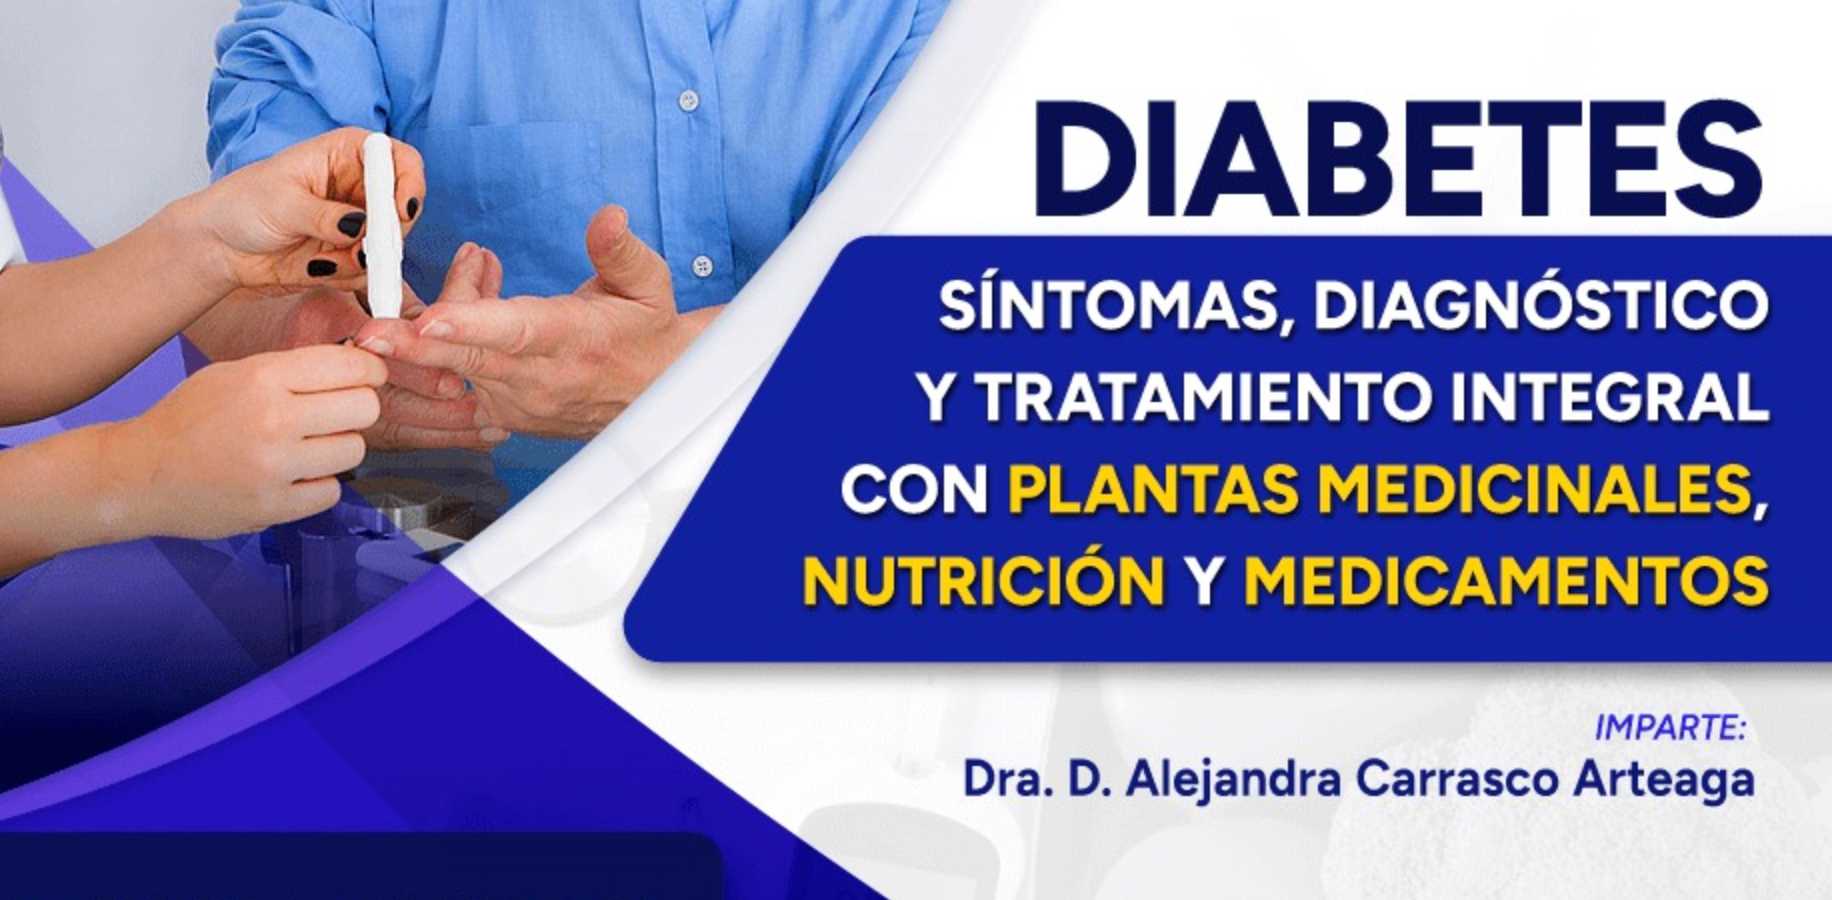 banner para DIABETES: SÍNTOMAS, DIAGNÓSTICO Y TRATAMIENTO INTEGRAL, NUTRICIÓN Y MEDICAMENTOS